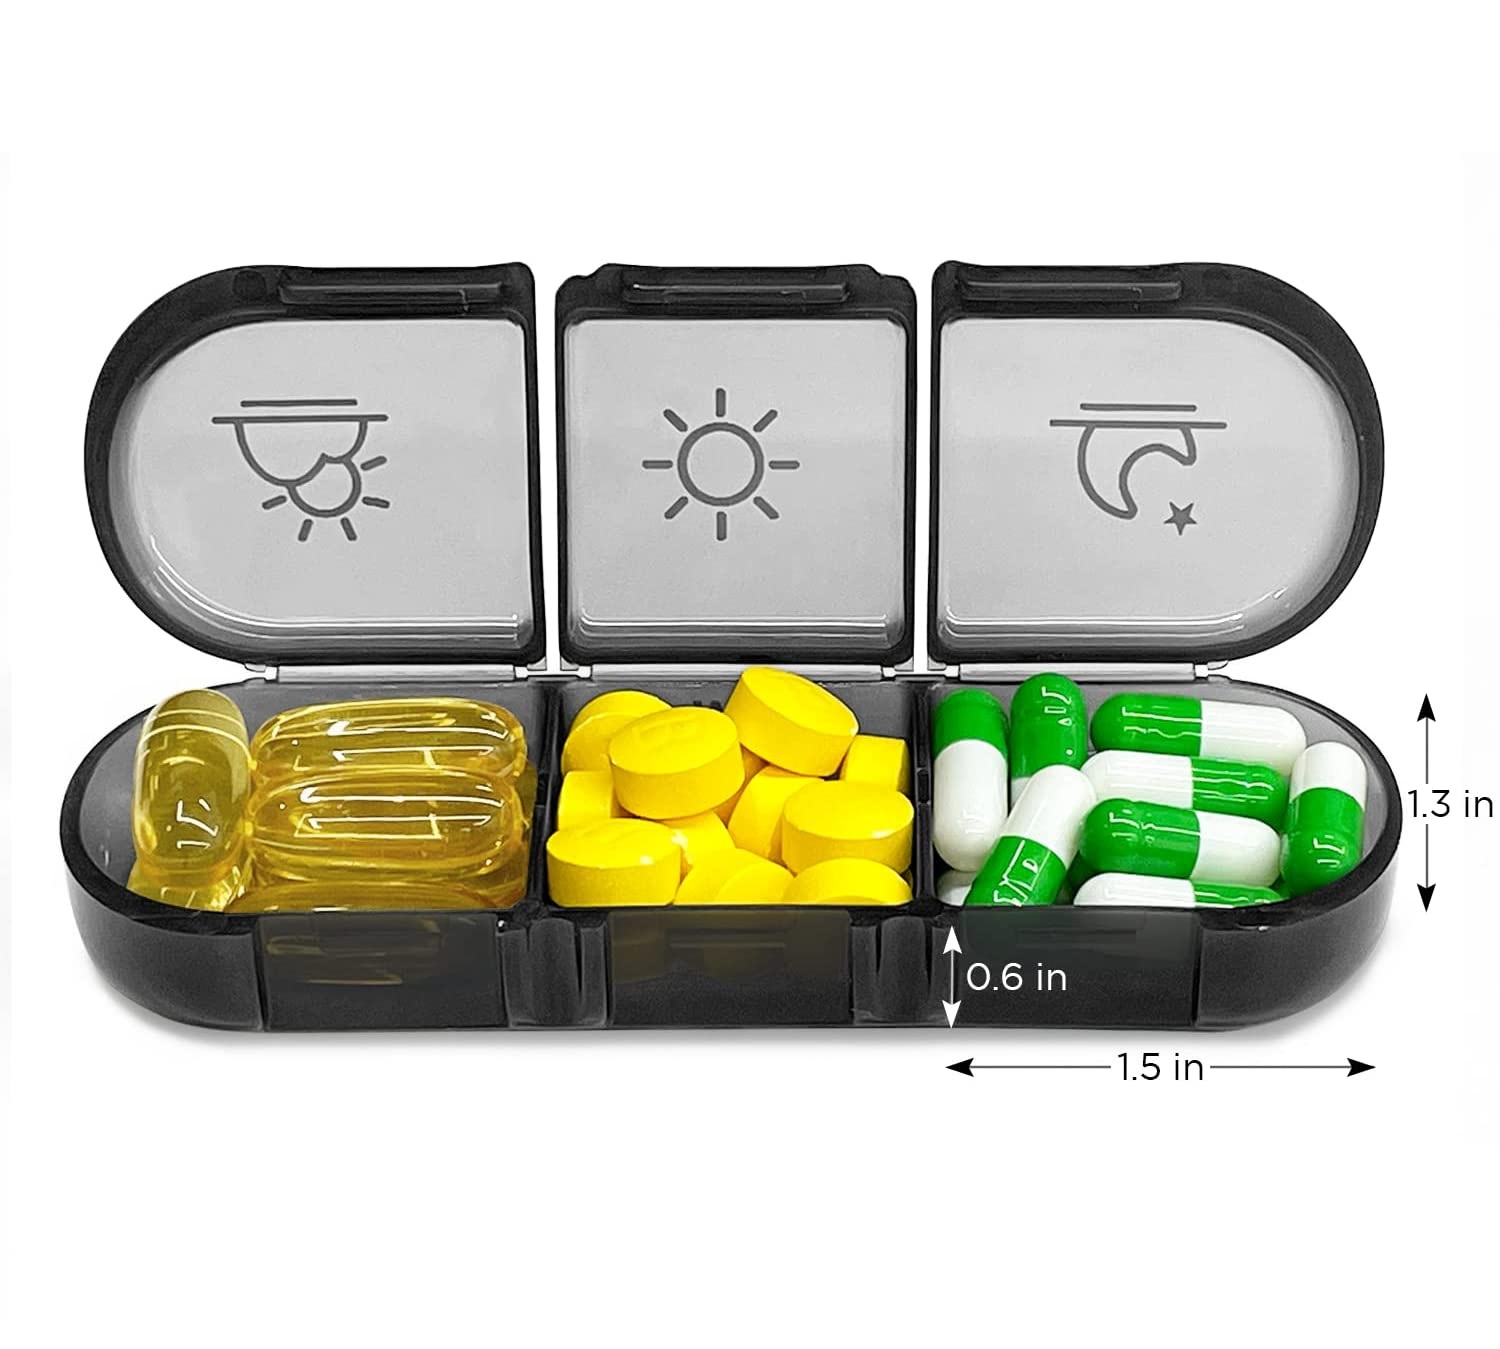 Organizador de píldoras semanal compacto y duradero para viajes